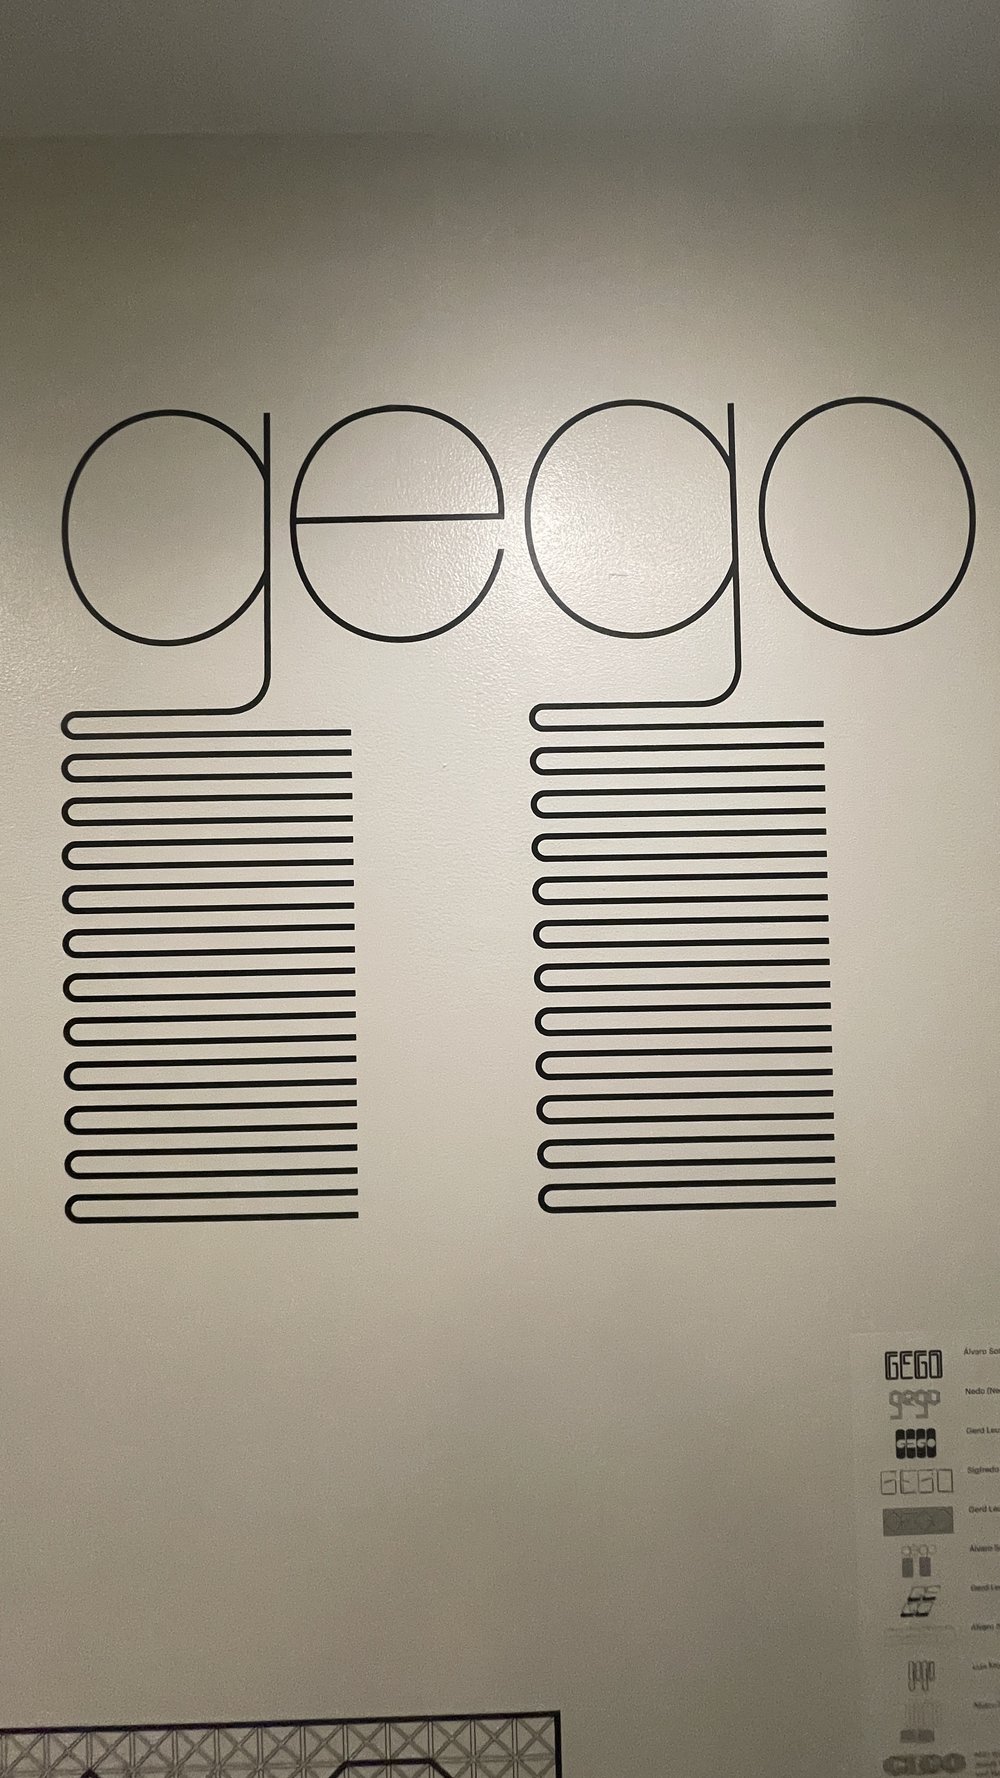 Hanni Ossott, 'Gego' 1977